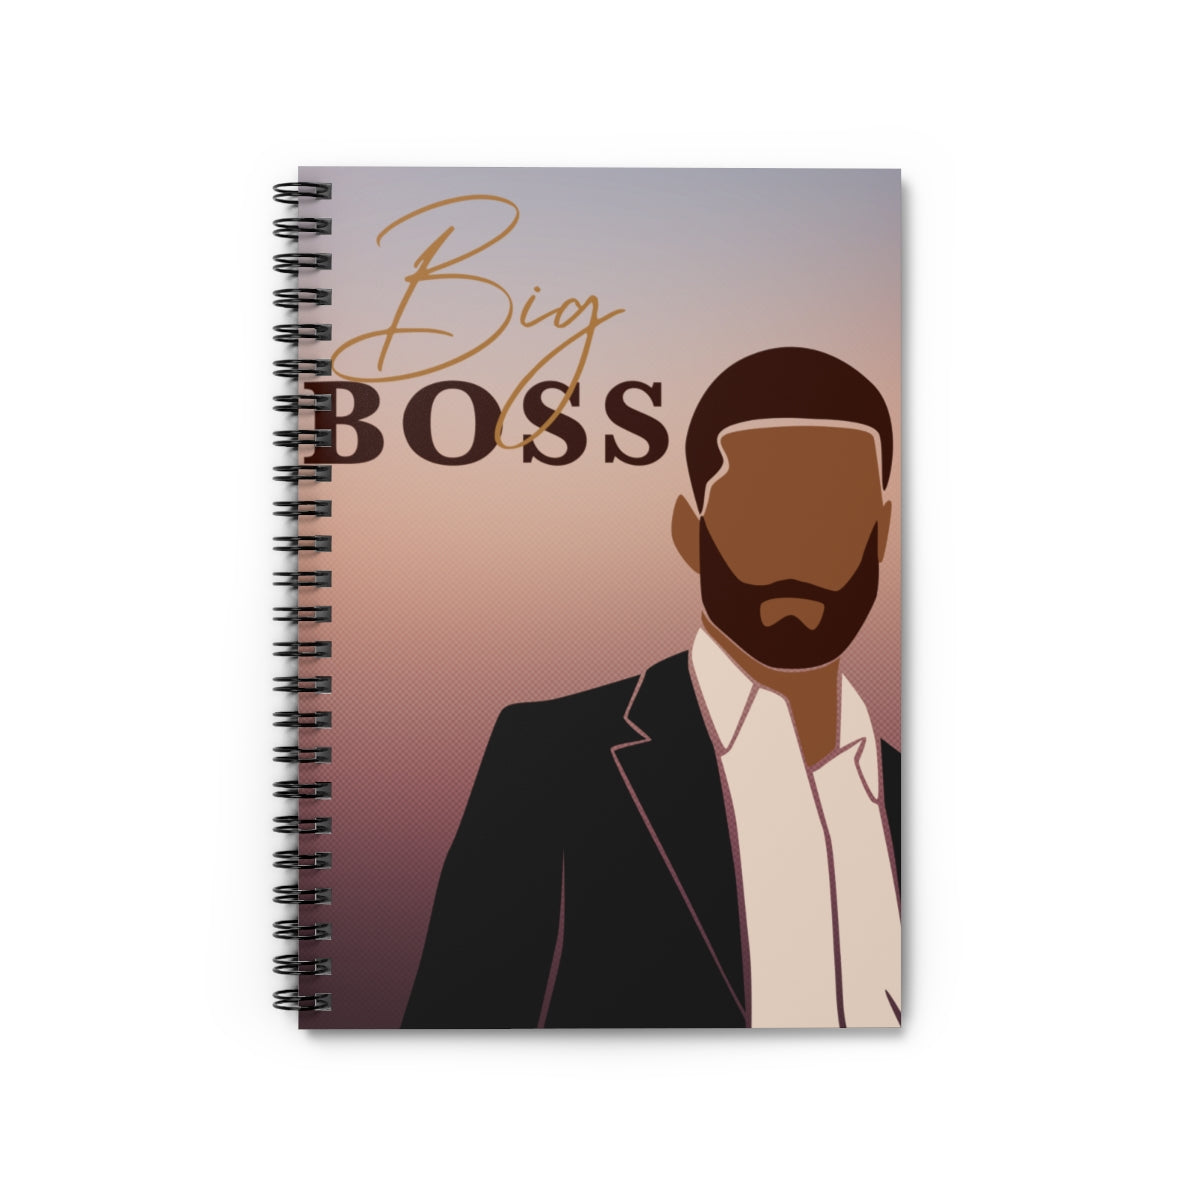 Big Boss Spiral Notebook Journal